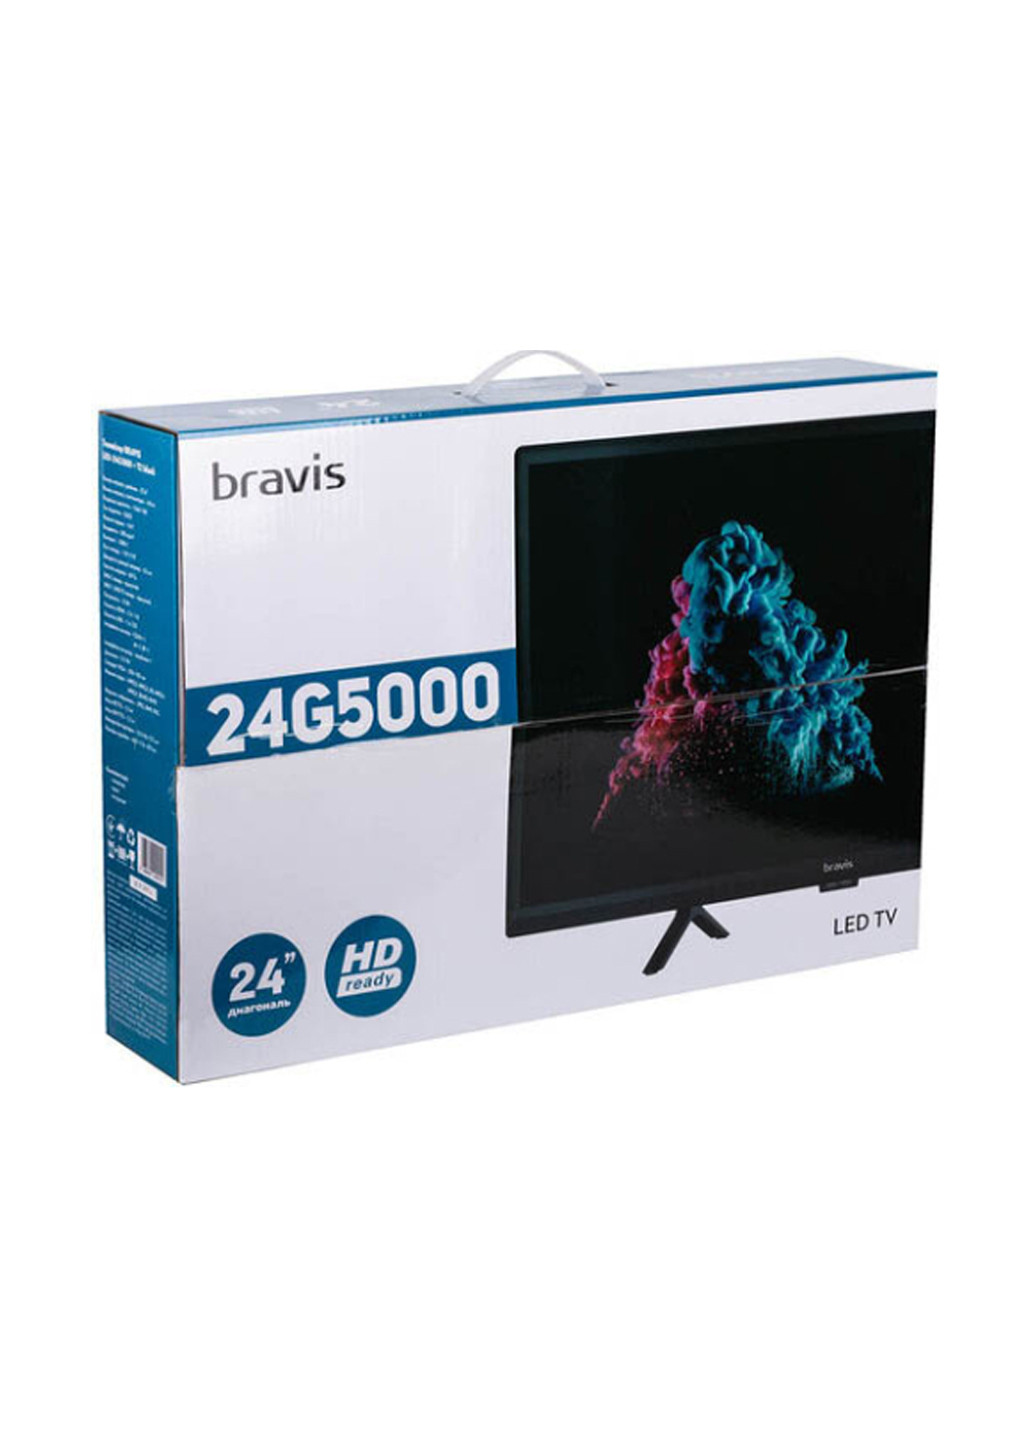 Телевизор Bravis led-24g5000 + t2 (155052693)